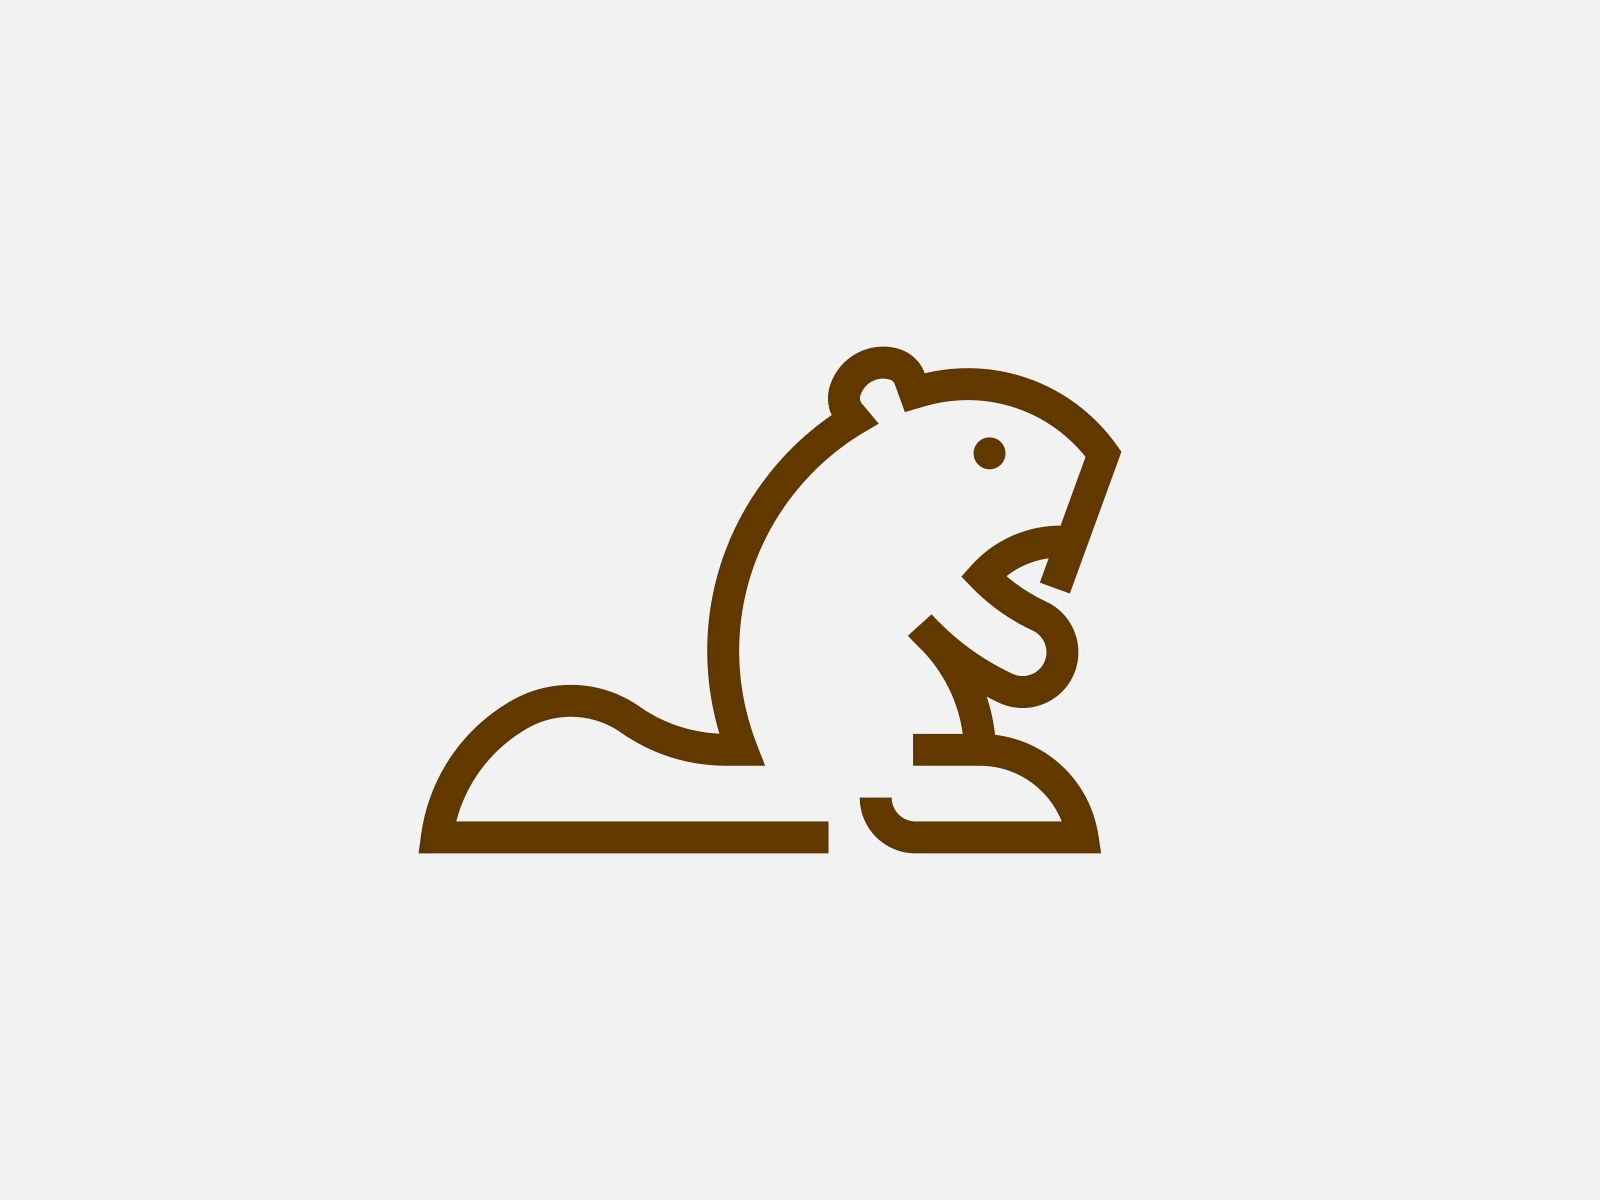 Beaver Logomark